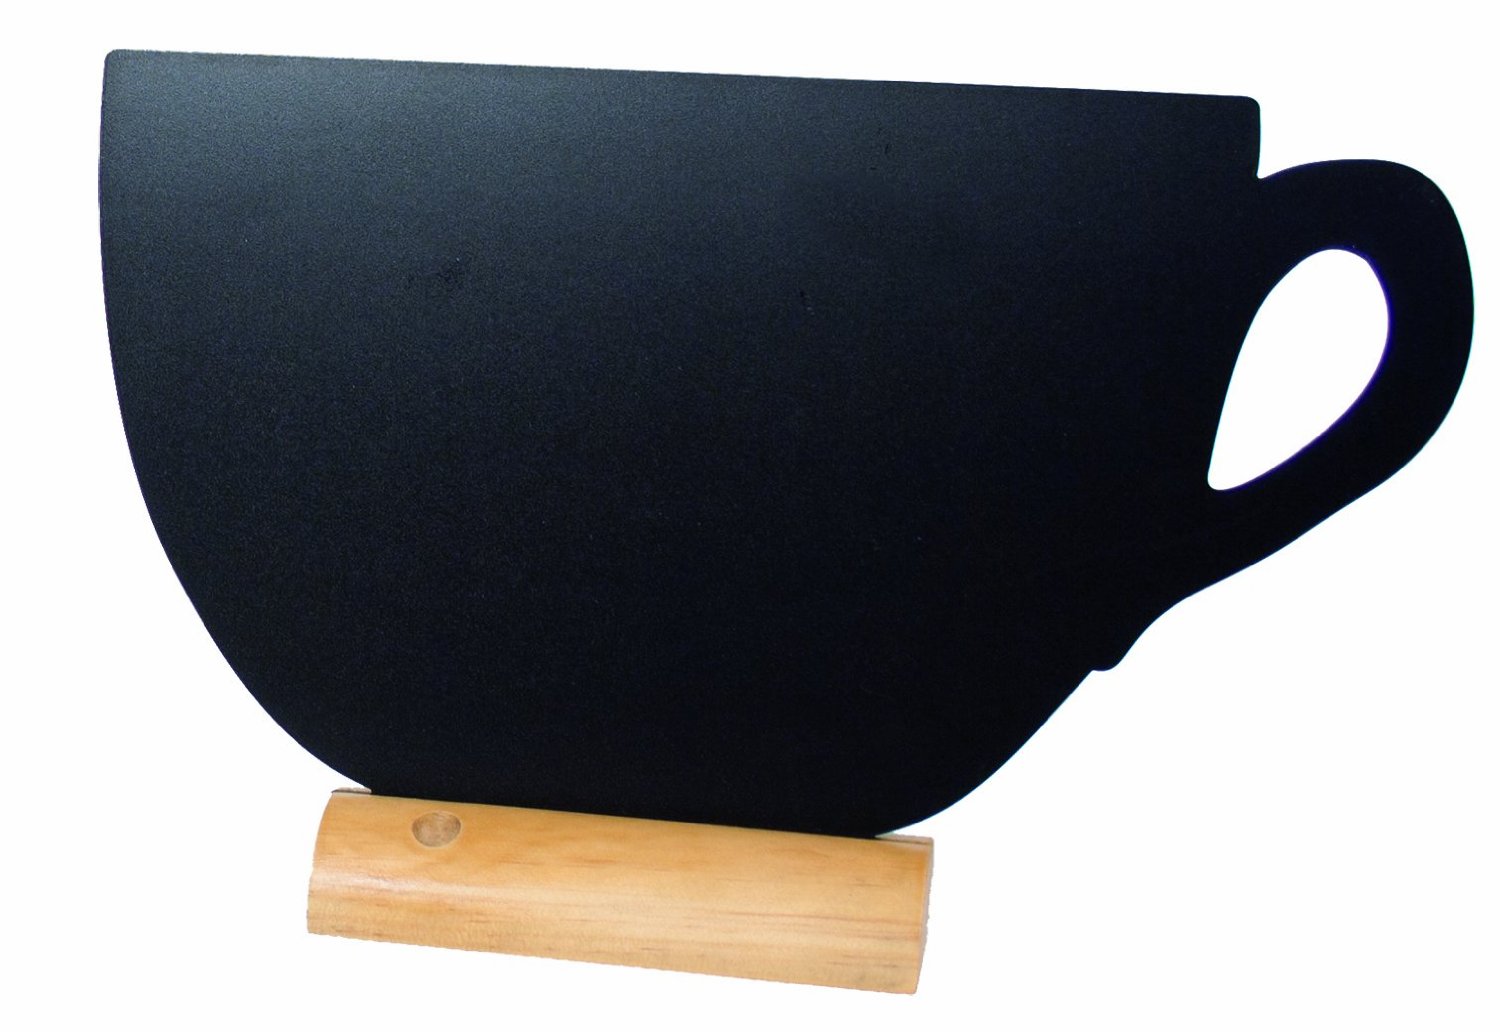 tabla pentru creta suport lemn forma cup securit title=tabla pentru creta suport lemn forma cup securit